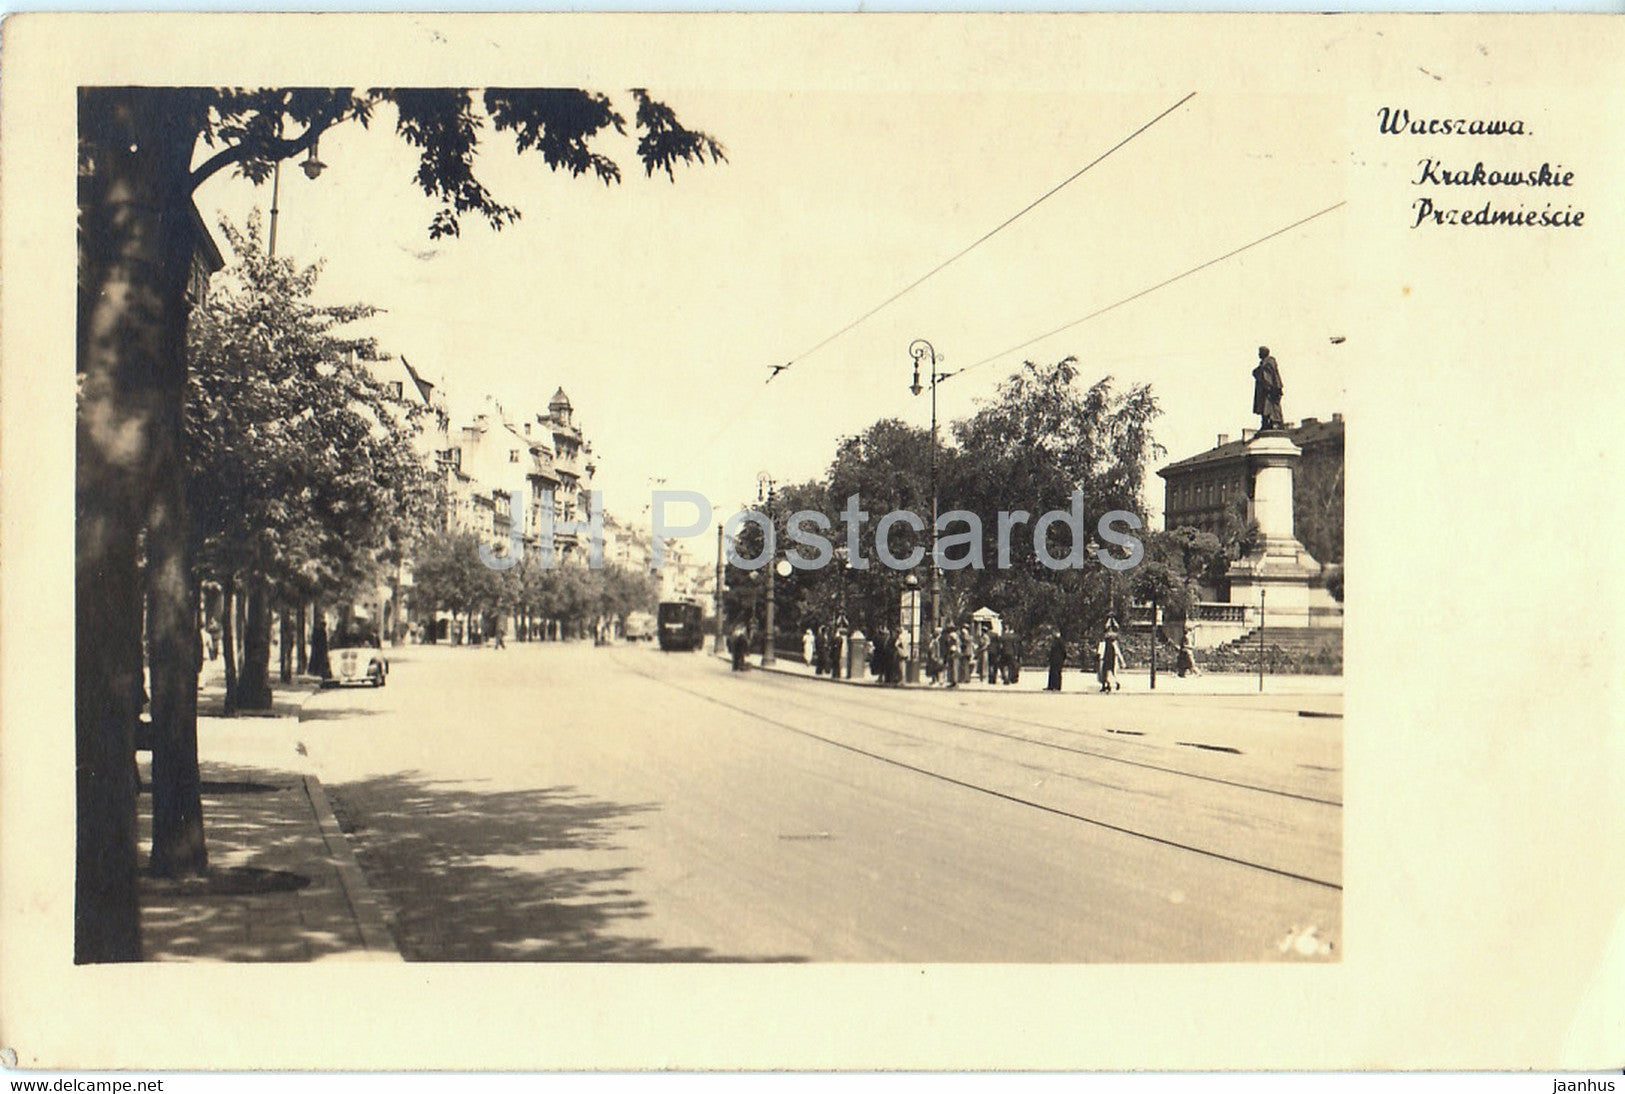 Warszawa - Krakowskie Przedmiescie -  Feldpost - old postcard - 1941 - Poland - used - JH Postcards